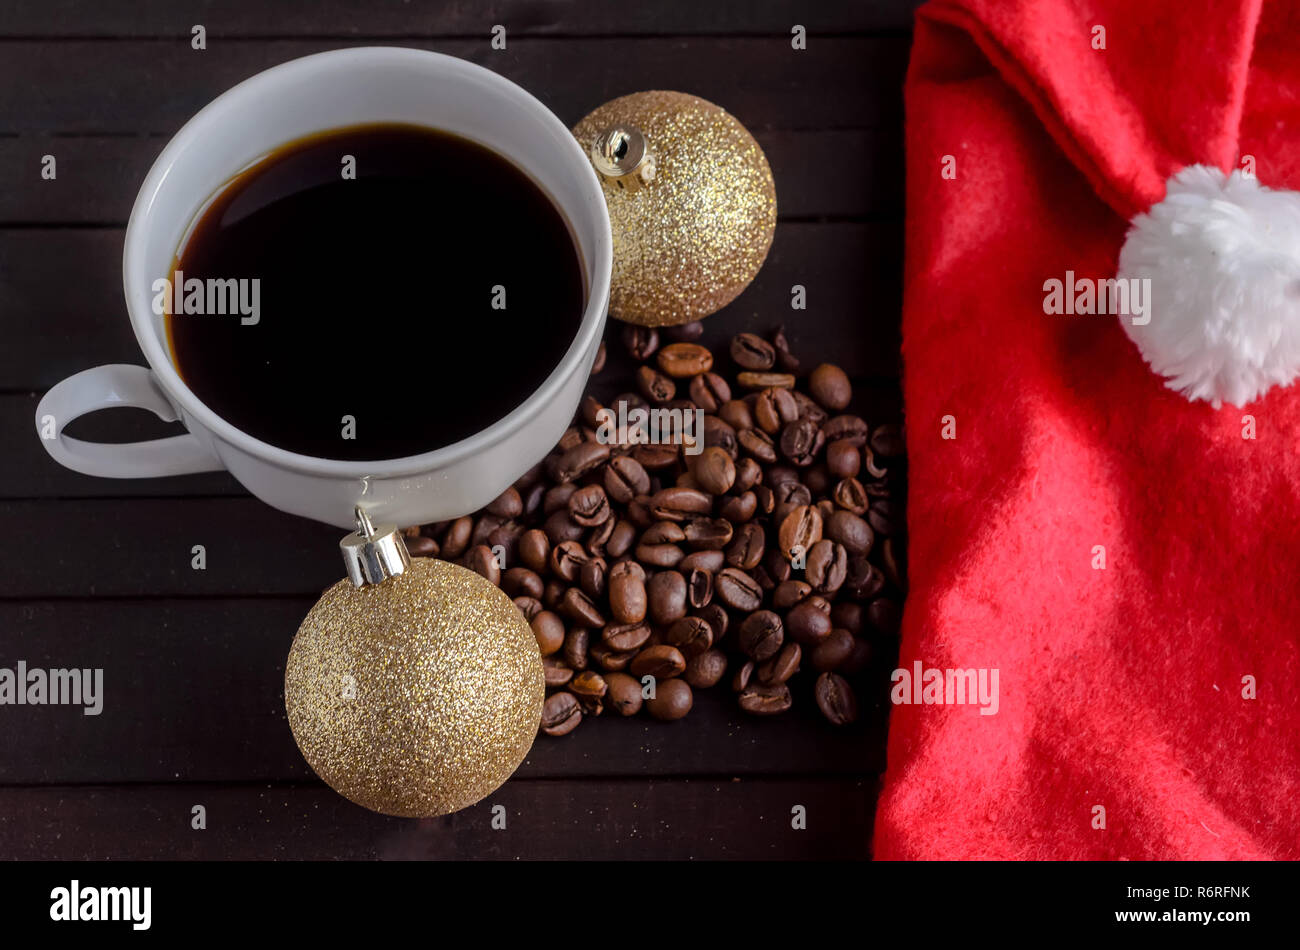 Eine Tasse Kaffee, Kaffeebohnen, zwei Weihnachten Kugeln und Santa hat.  Weihnachten Konzept Stockfotografie - Alamy